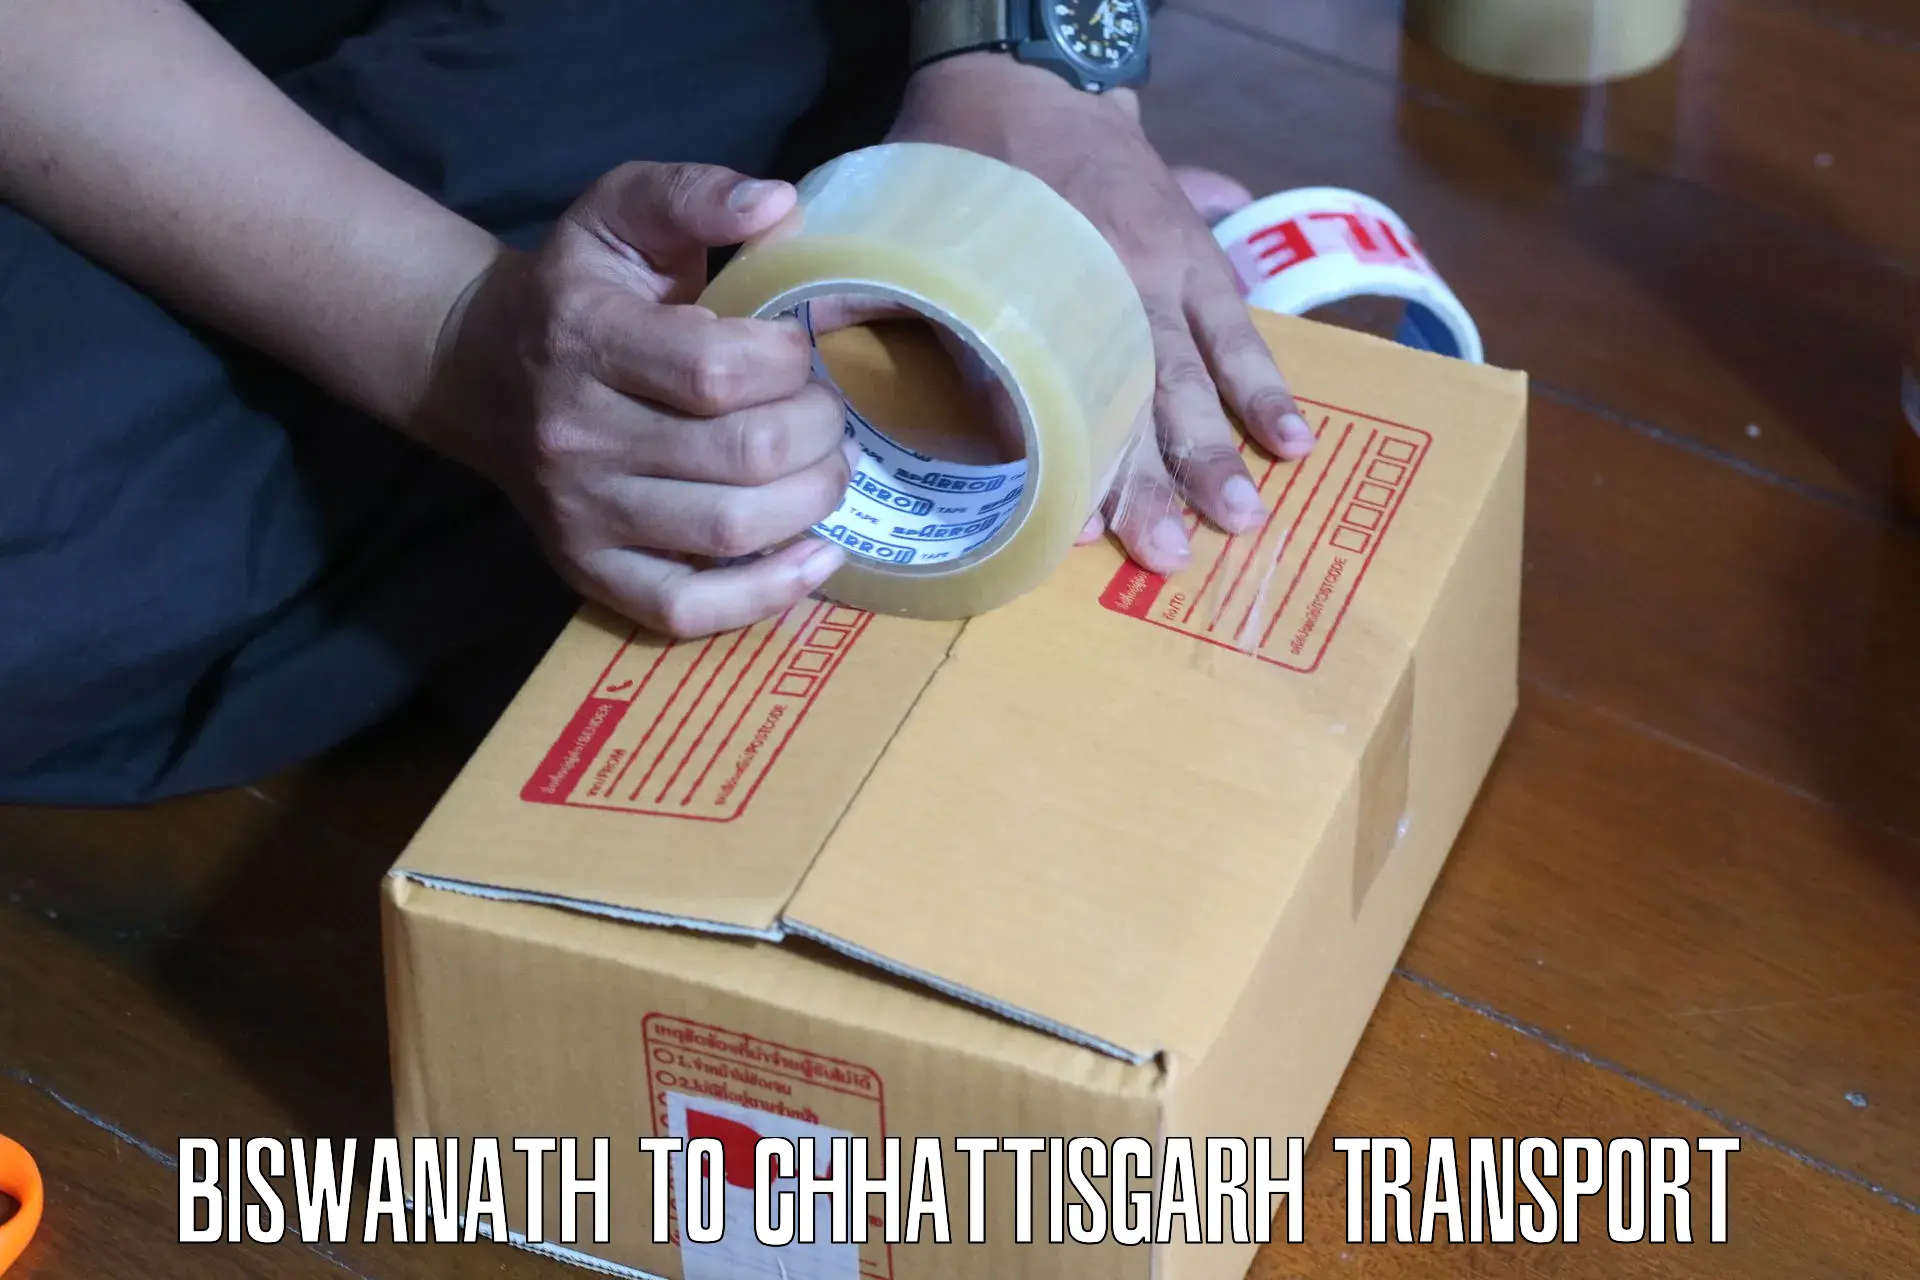 Transportation services Biswanath to Chhattisgarh